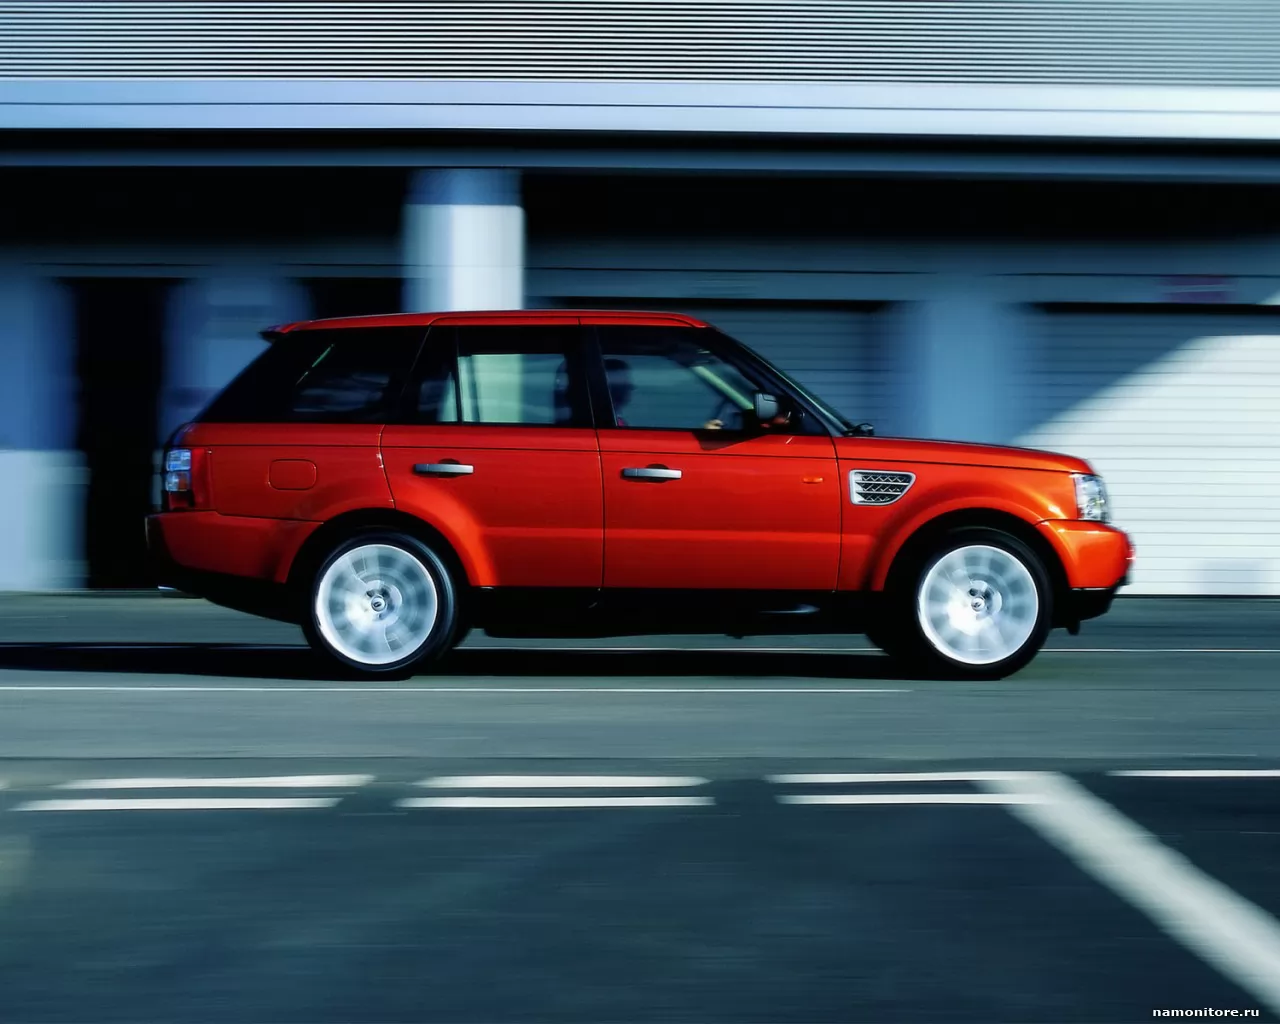  Land Rover Range Rover Sport   , Land Rover, , , ,  